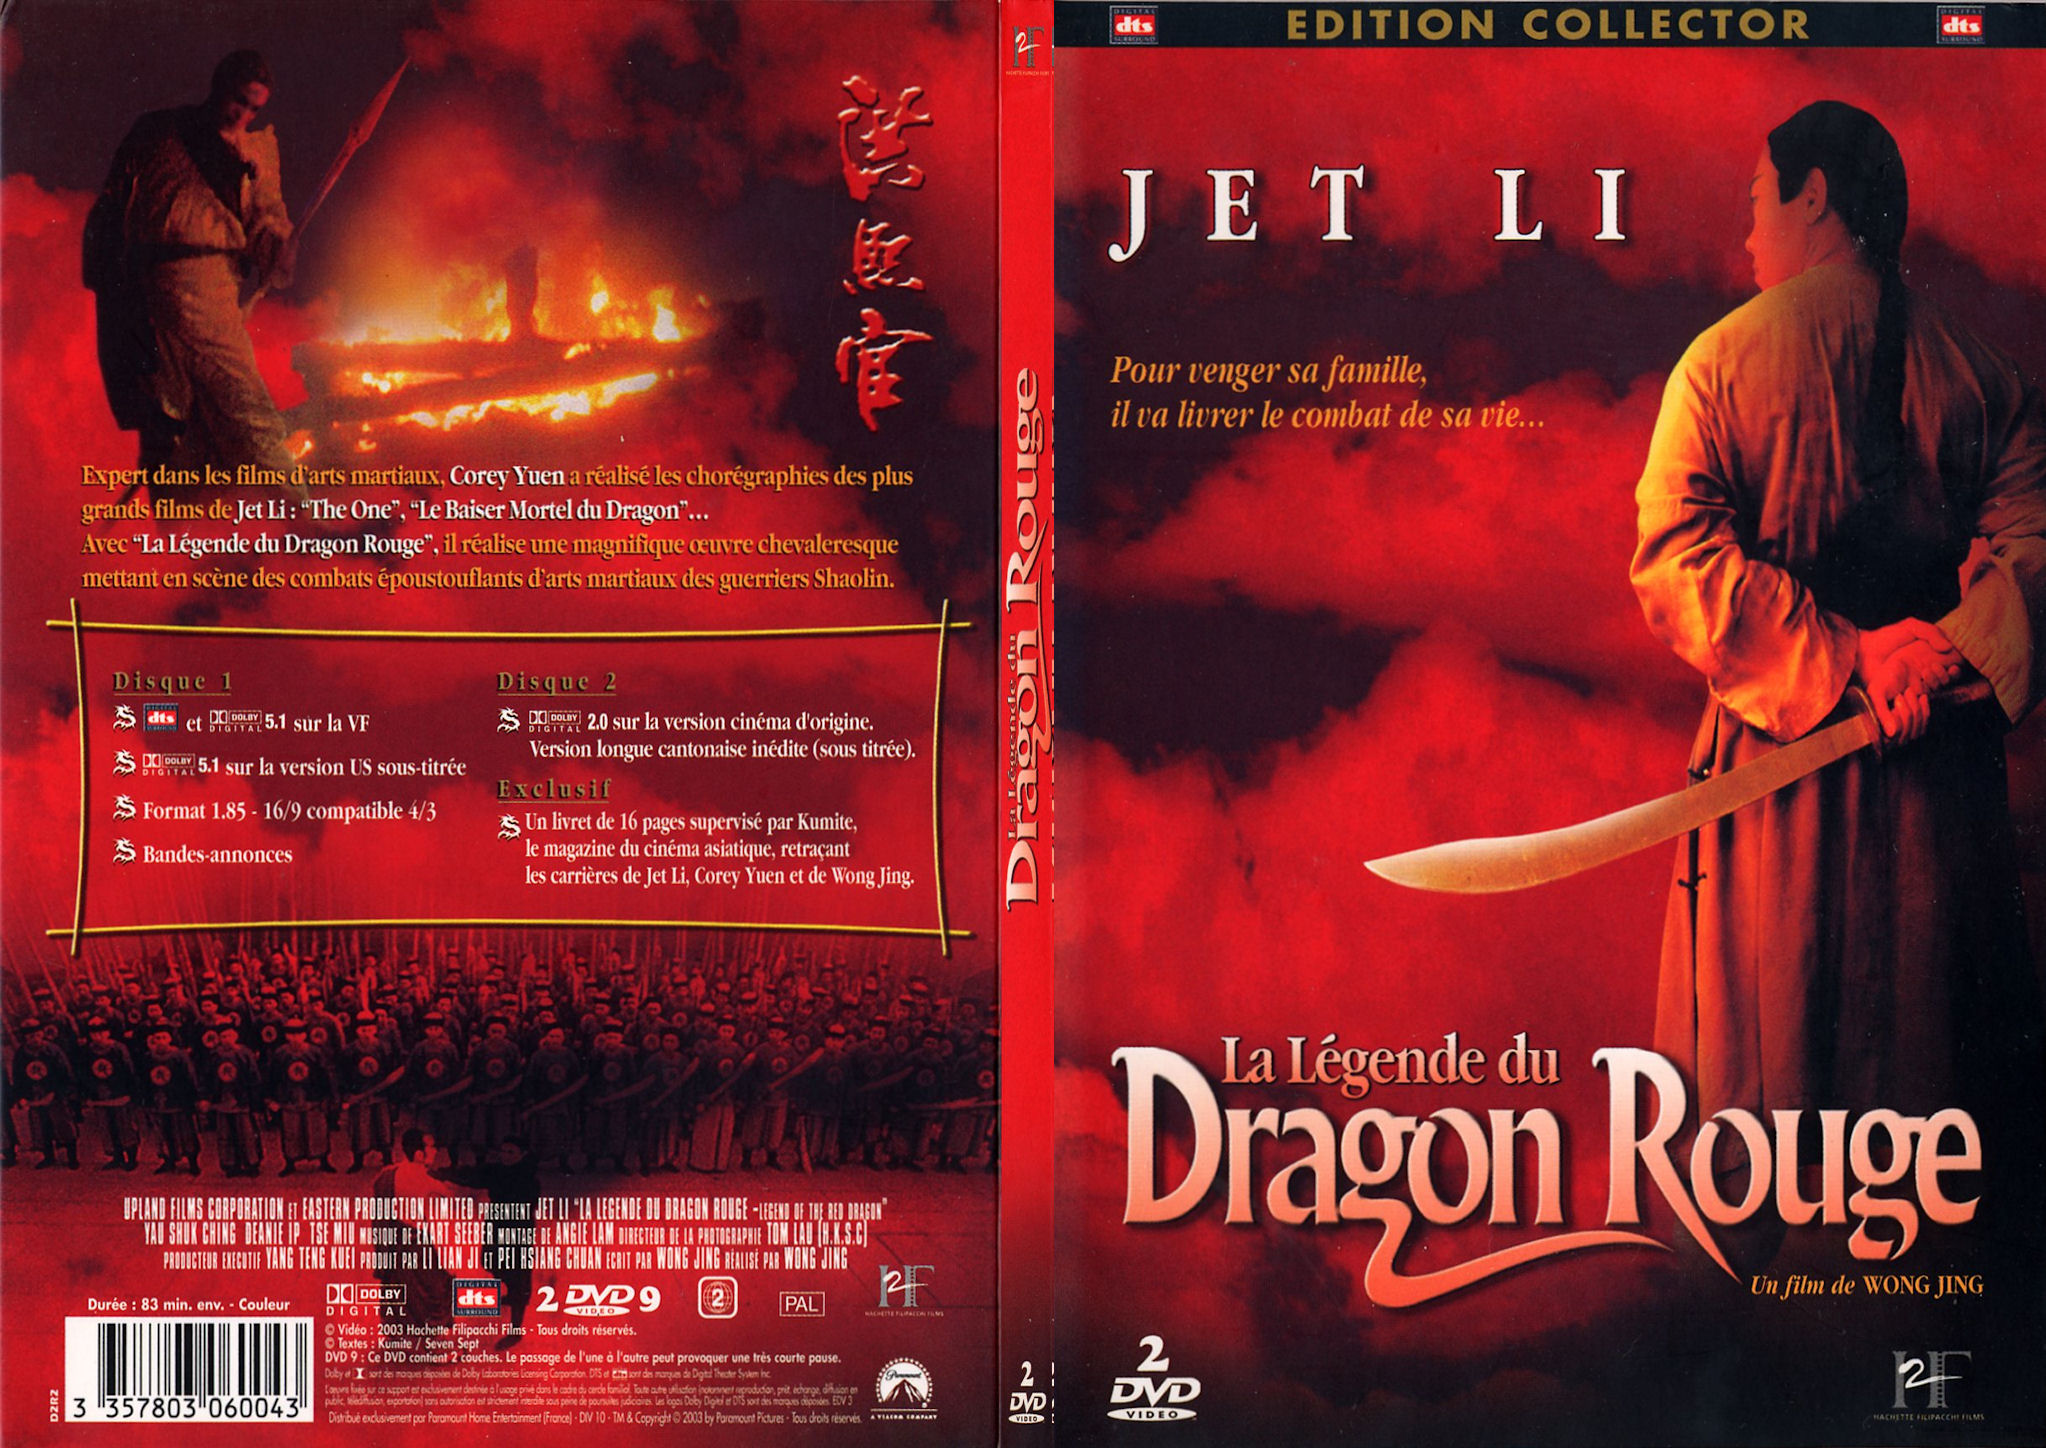 Jaquette DVD La lgende du dragon rouge - SLIM